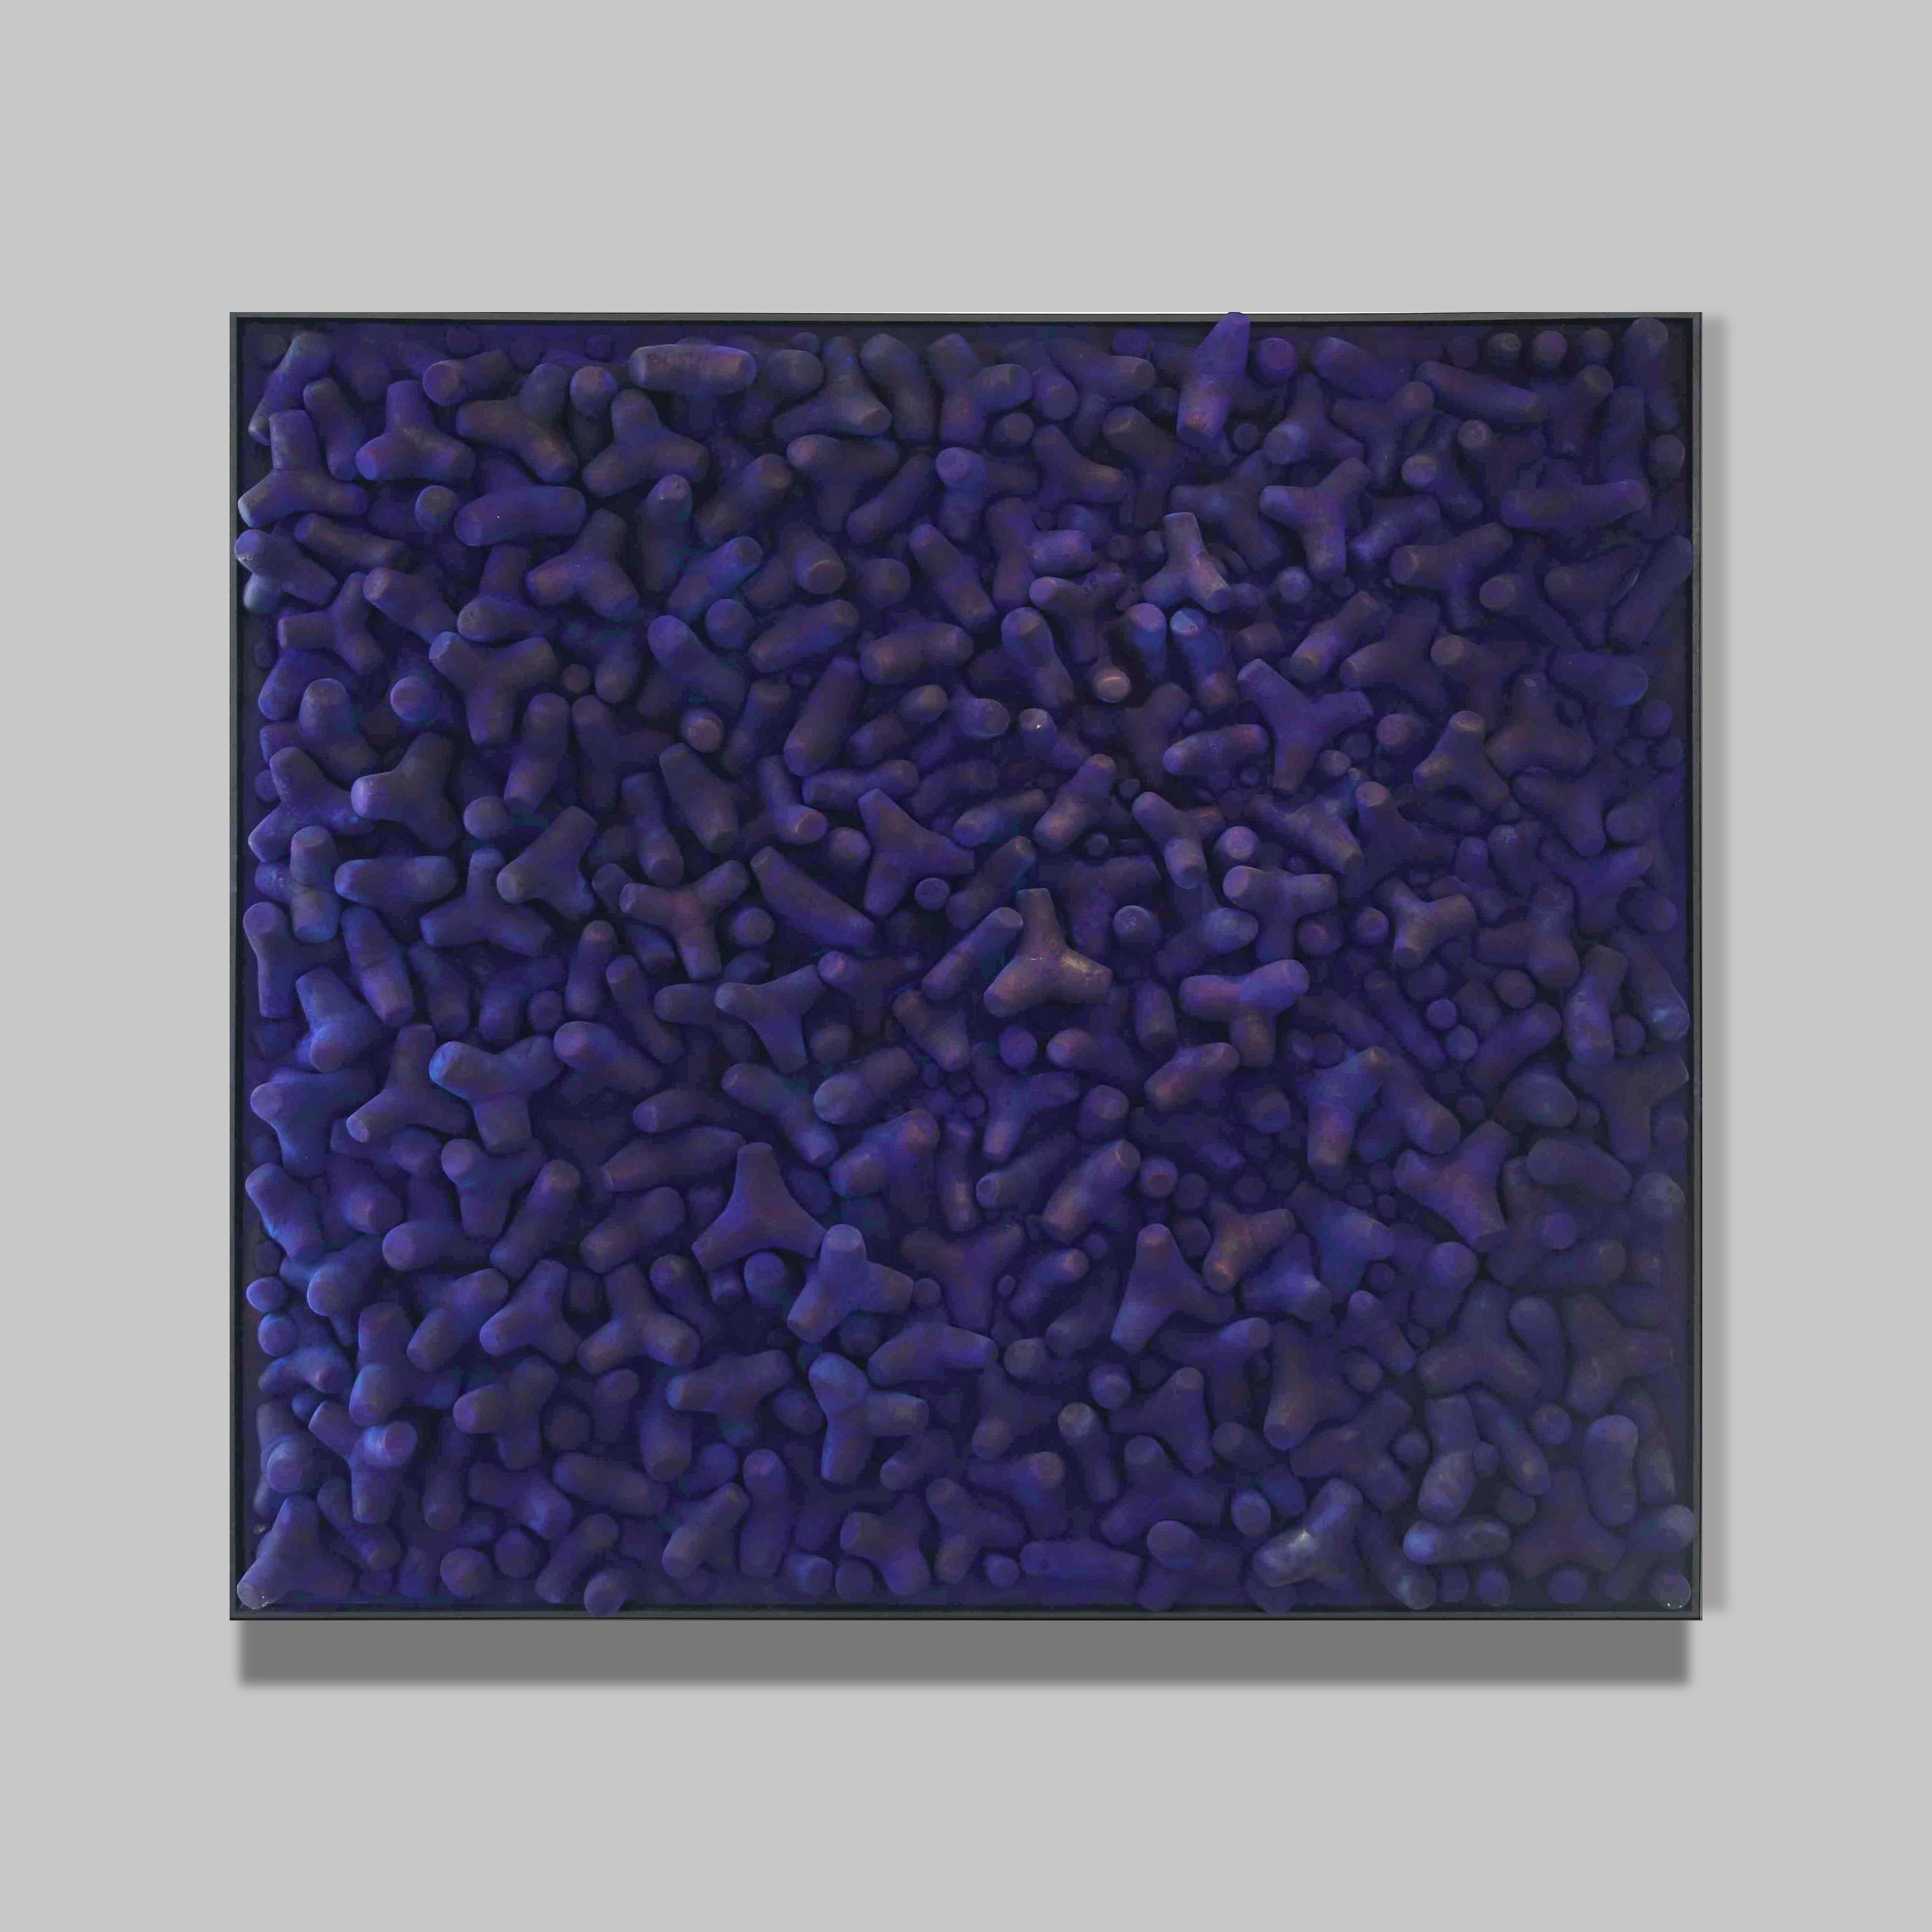 Sans horizon II – 2014 
Sculpture matériaux composites 
200 x 180 x 15 cm